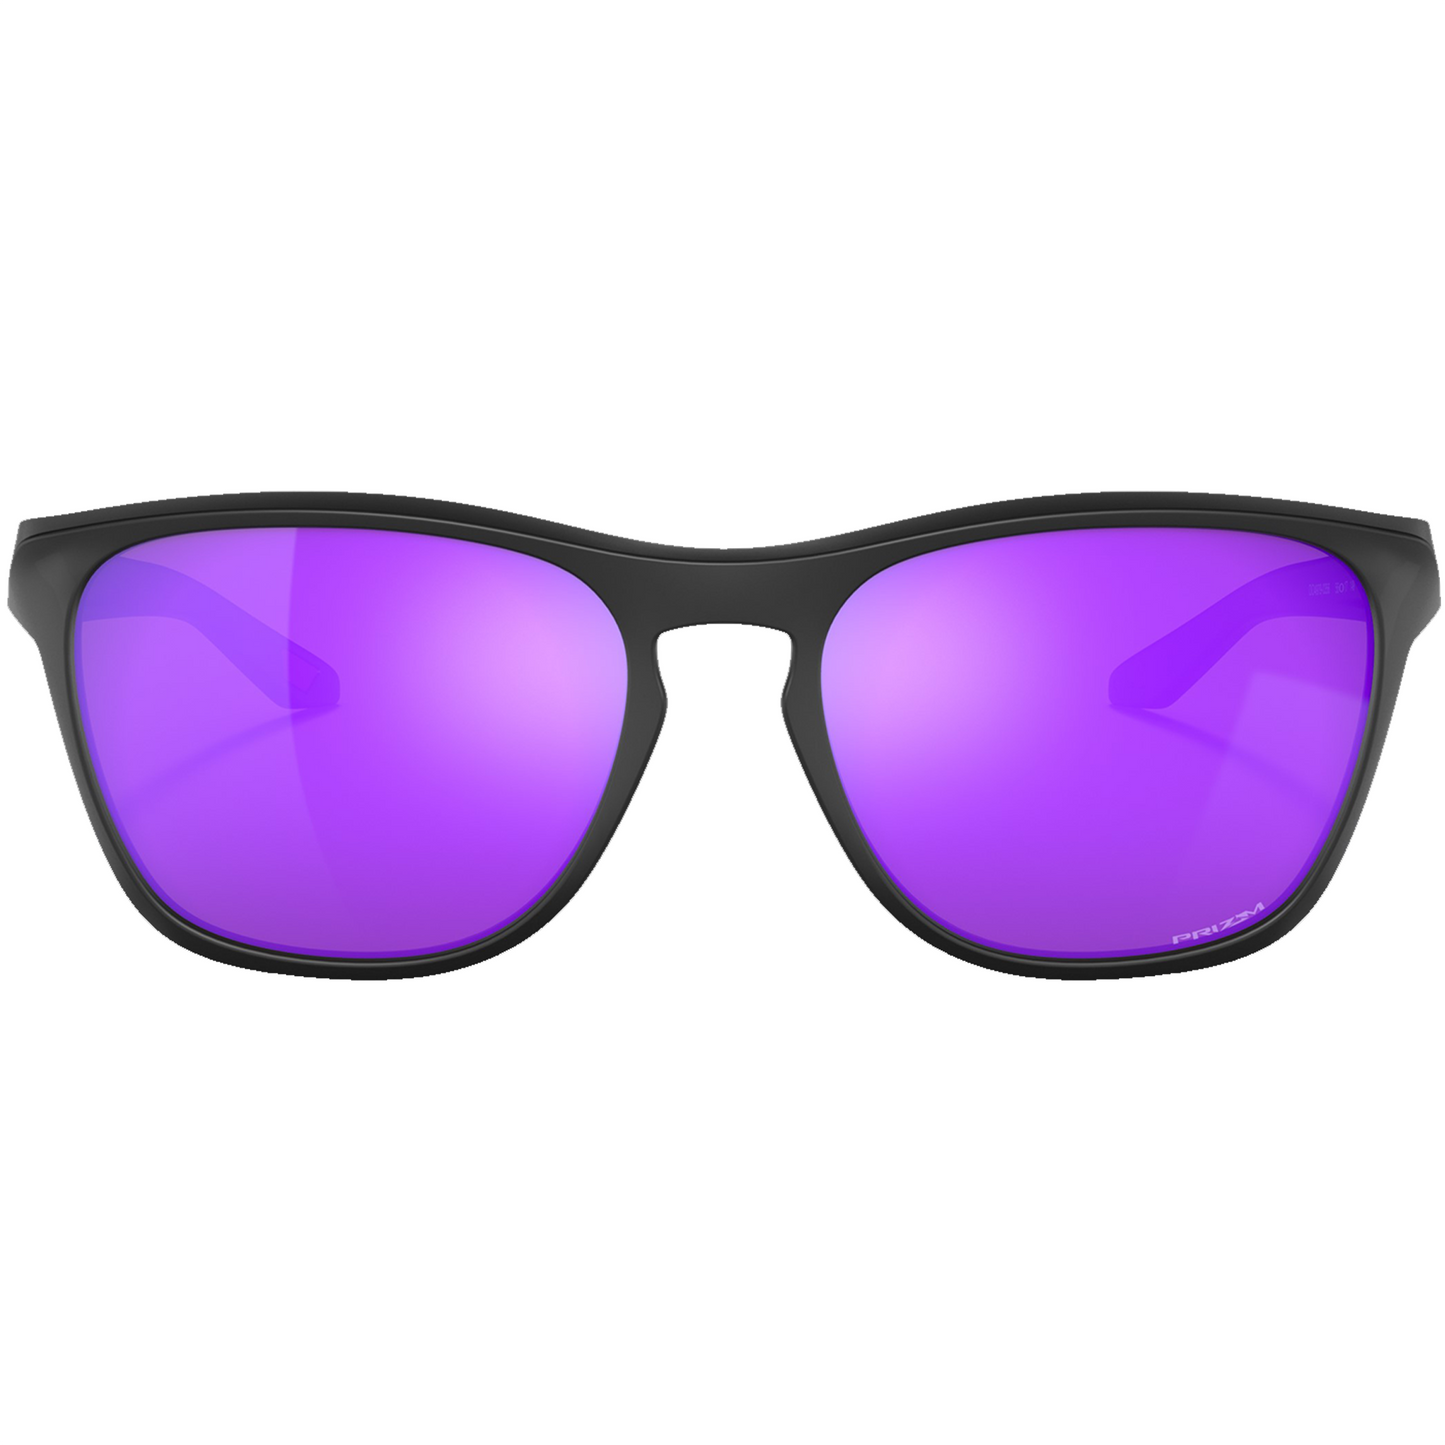 Oakley Manorburn Sunglasses (Matte Black) Prizm Violet Lens - Free Case